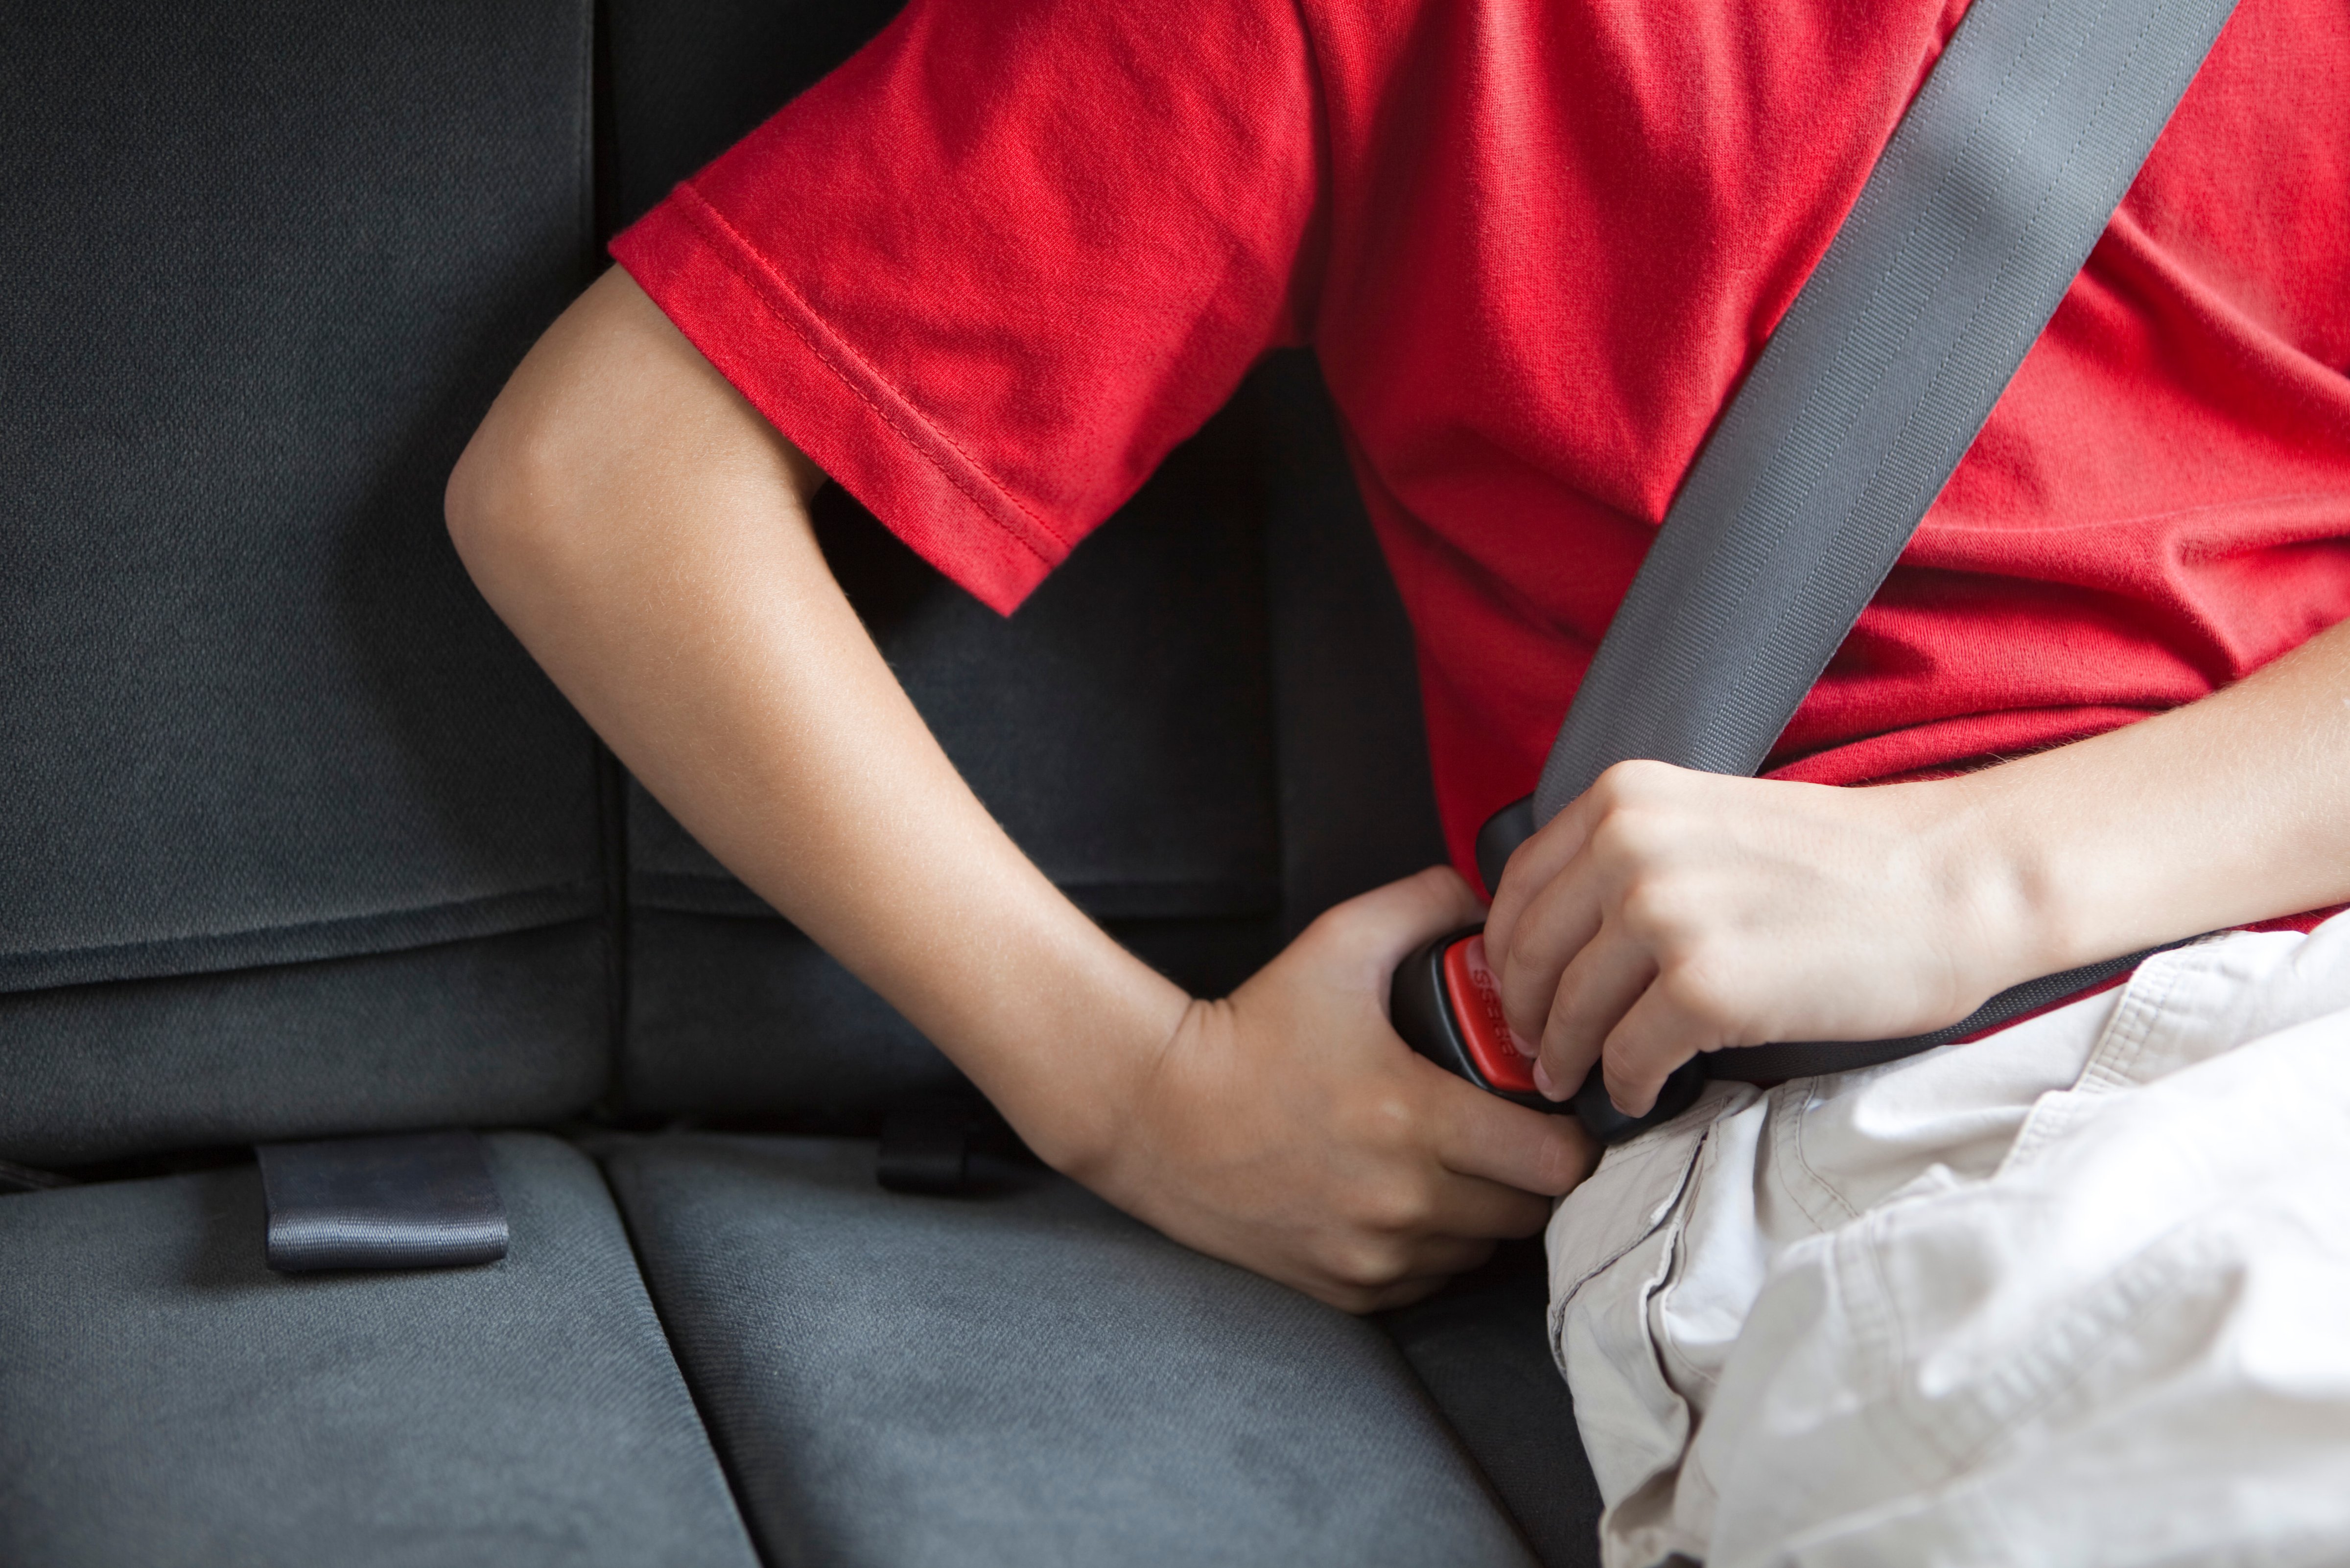 oklahoma senate seat belt bill law kids